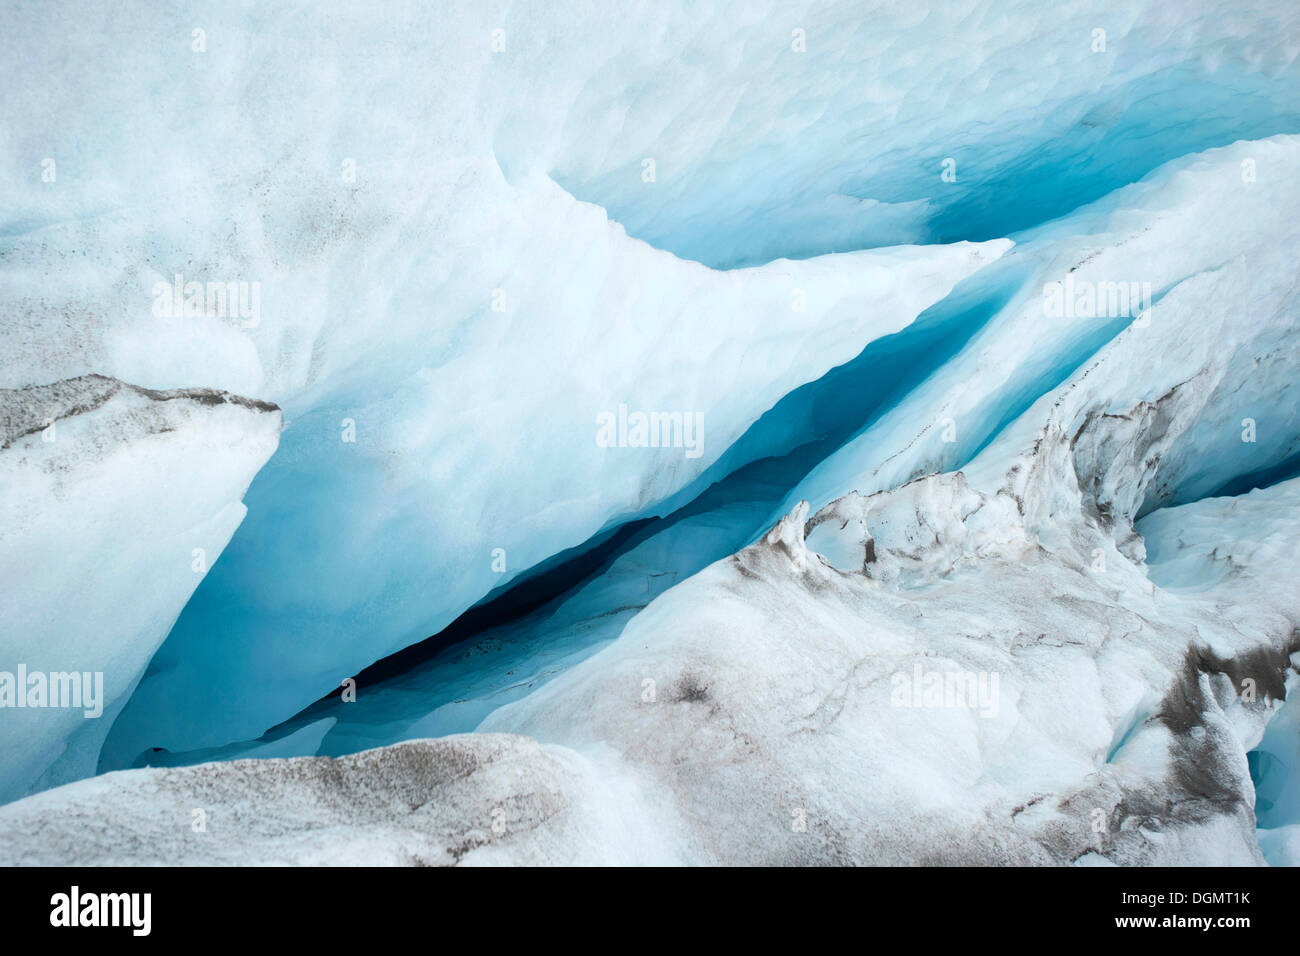 Hielo azul en una grieta de Glaciar Nordenskioeldbreen Spitzbergen, Svalbard, Norwegen, Skandinavien, Europa Foto de stock